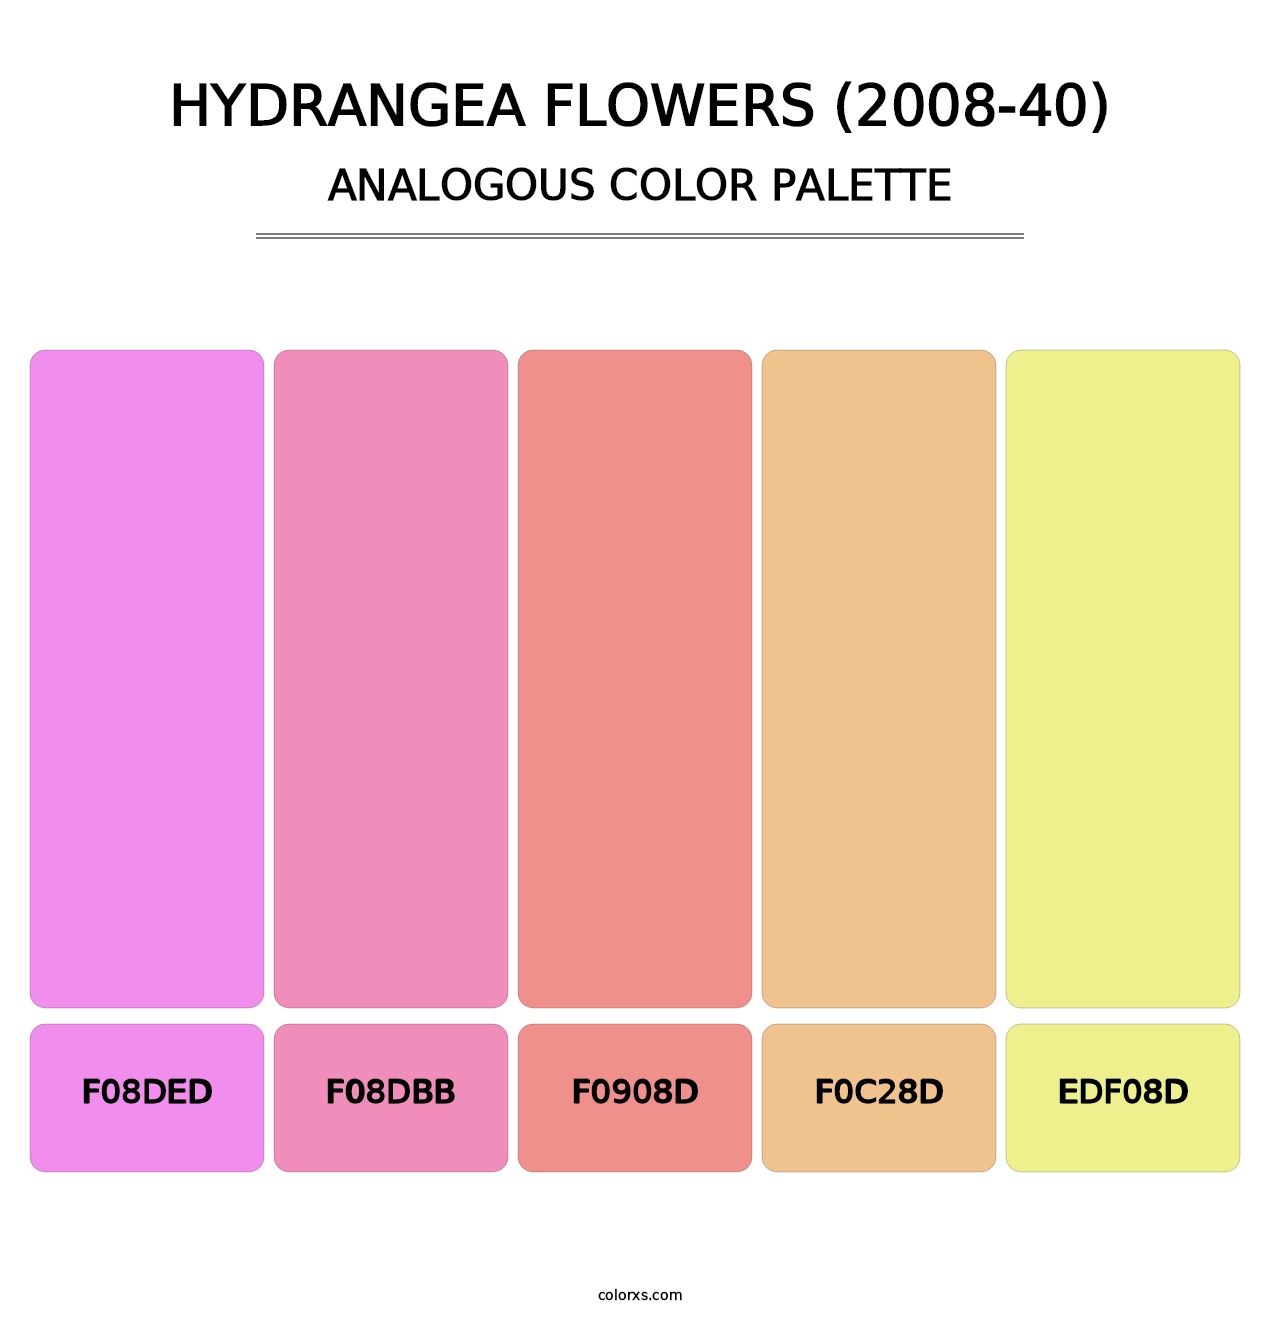 Hydrangea Flowers (2008-40) - Analogous Color Palette